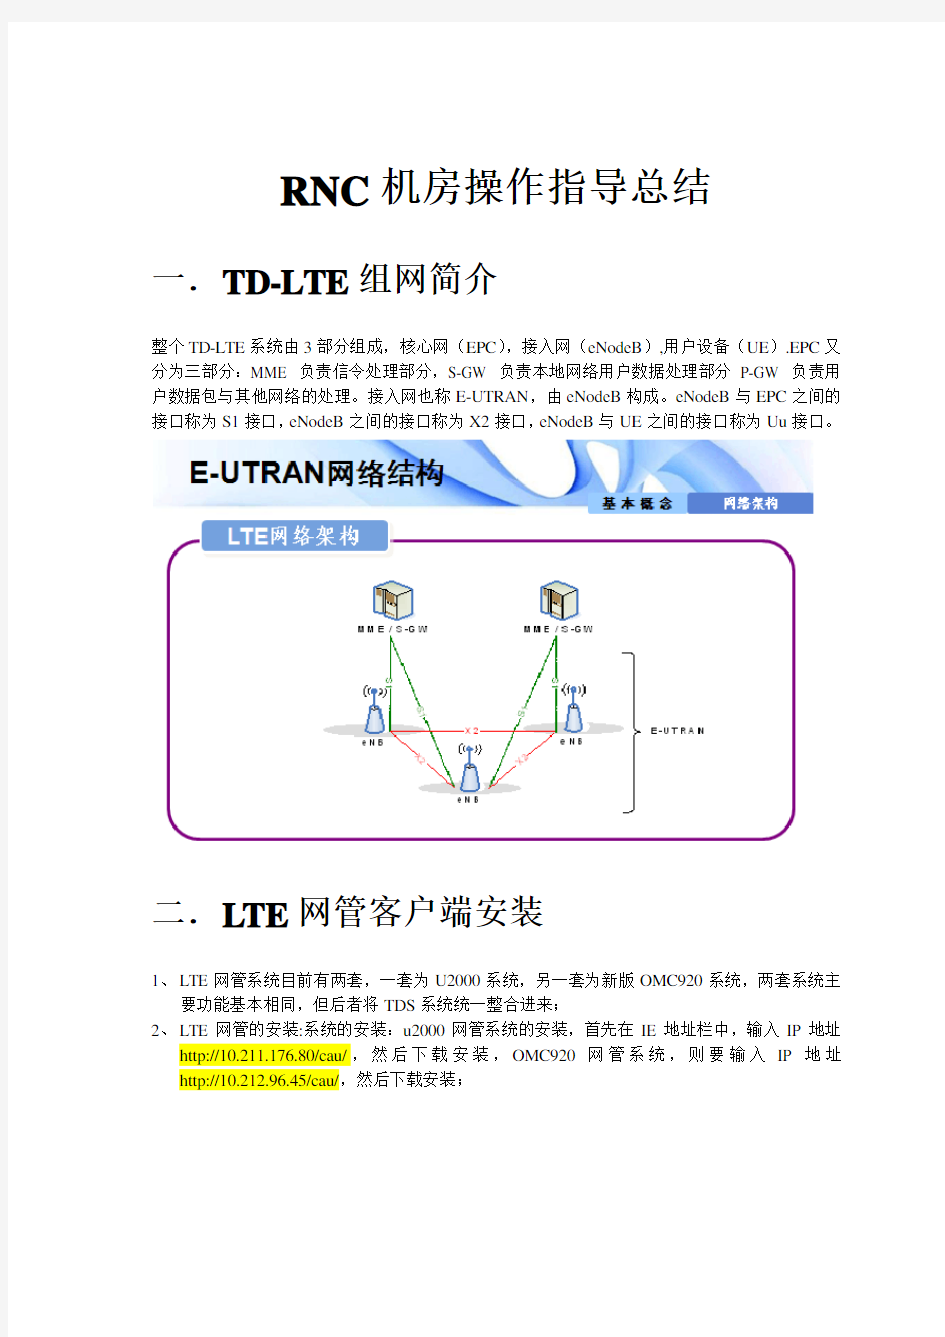 LTE华为后台操作指导书20160330